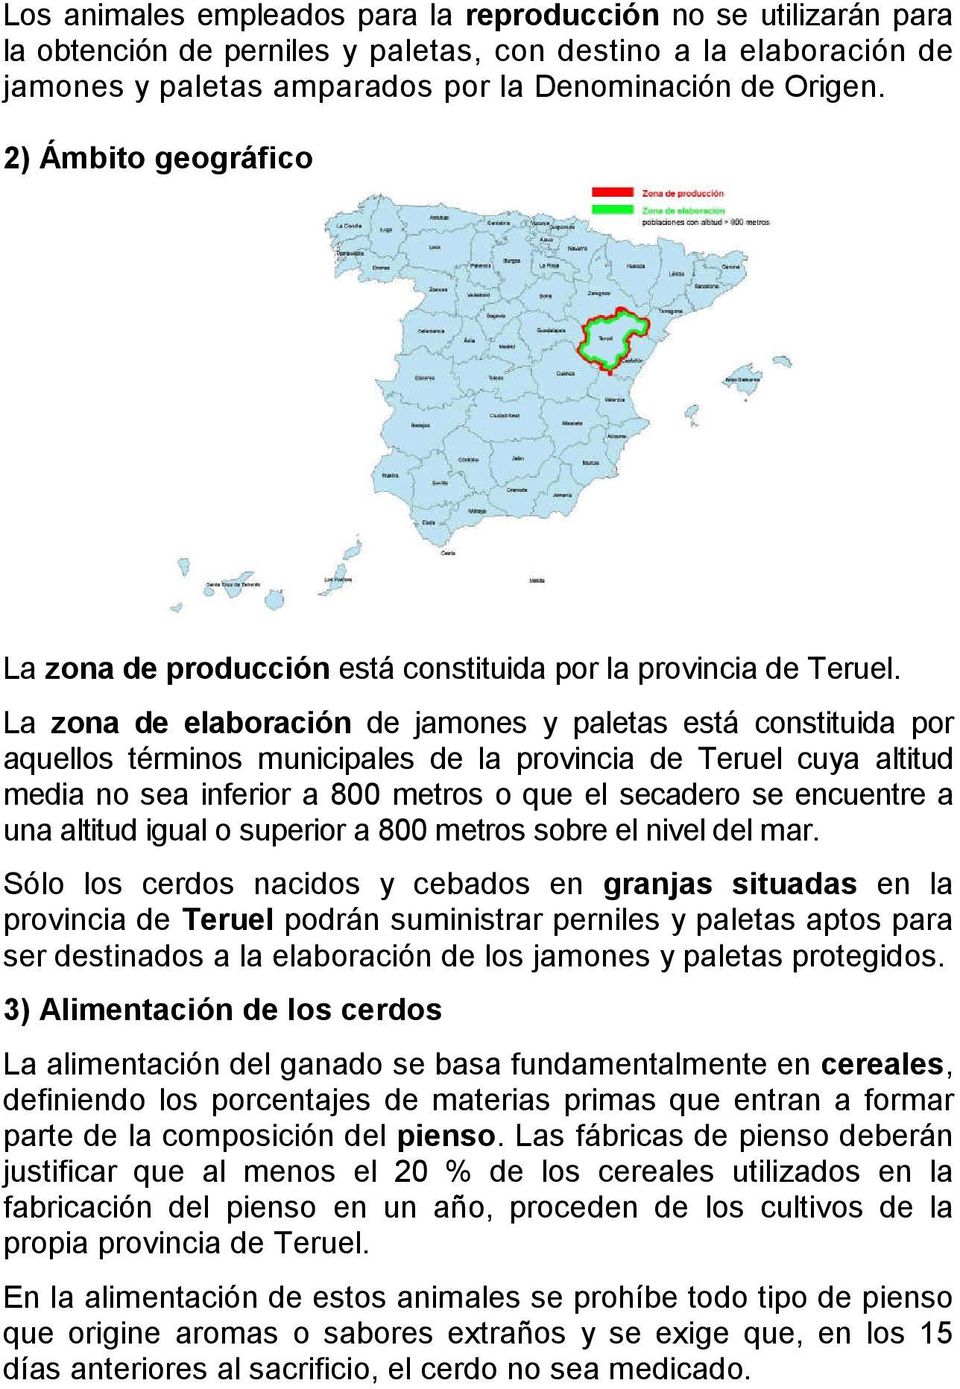 La zona de elaboración de jamones y paletas está constituida por aquellos términos municipales de la provincia de Teruel cuya altitud media no sea inferior a 800 metros o que el secadero se encuentre